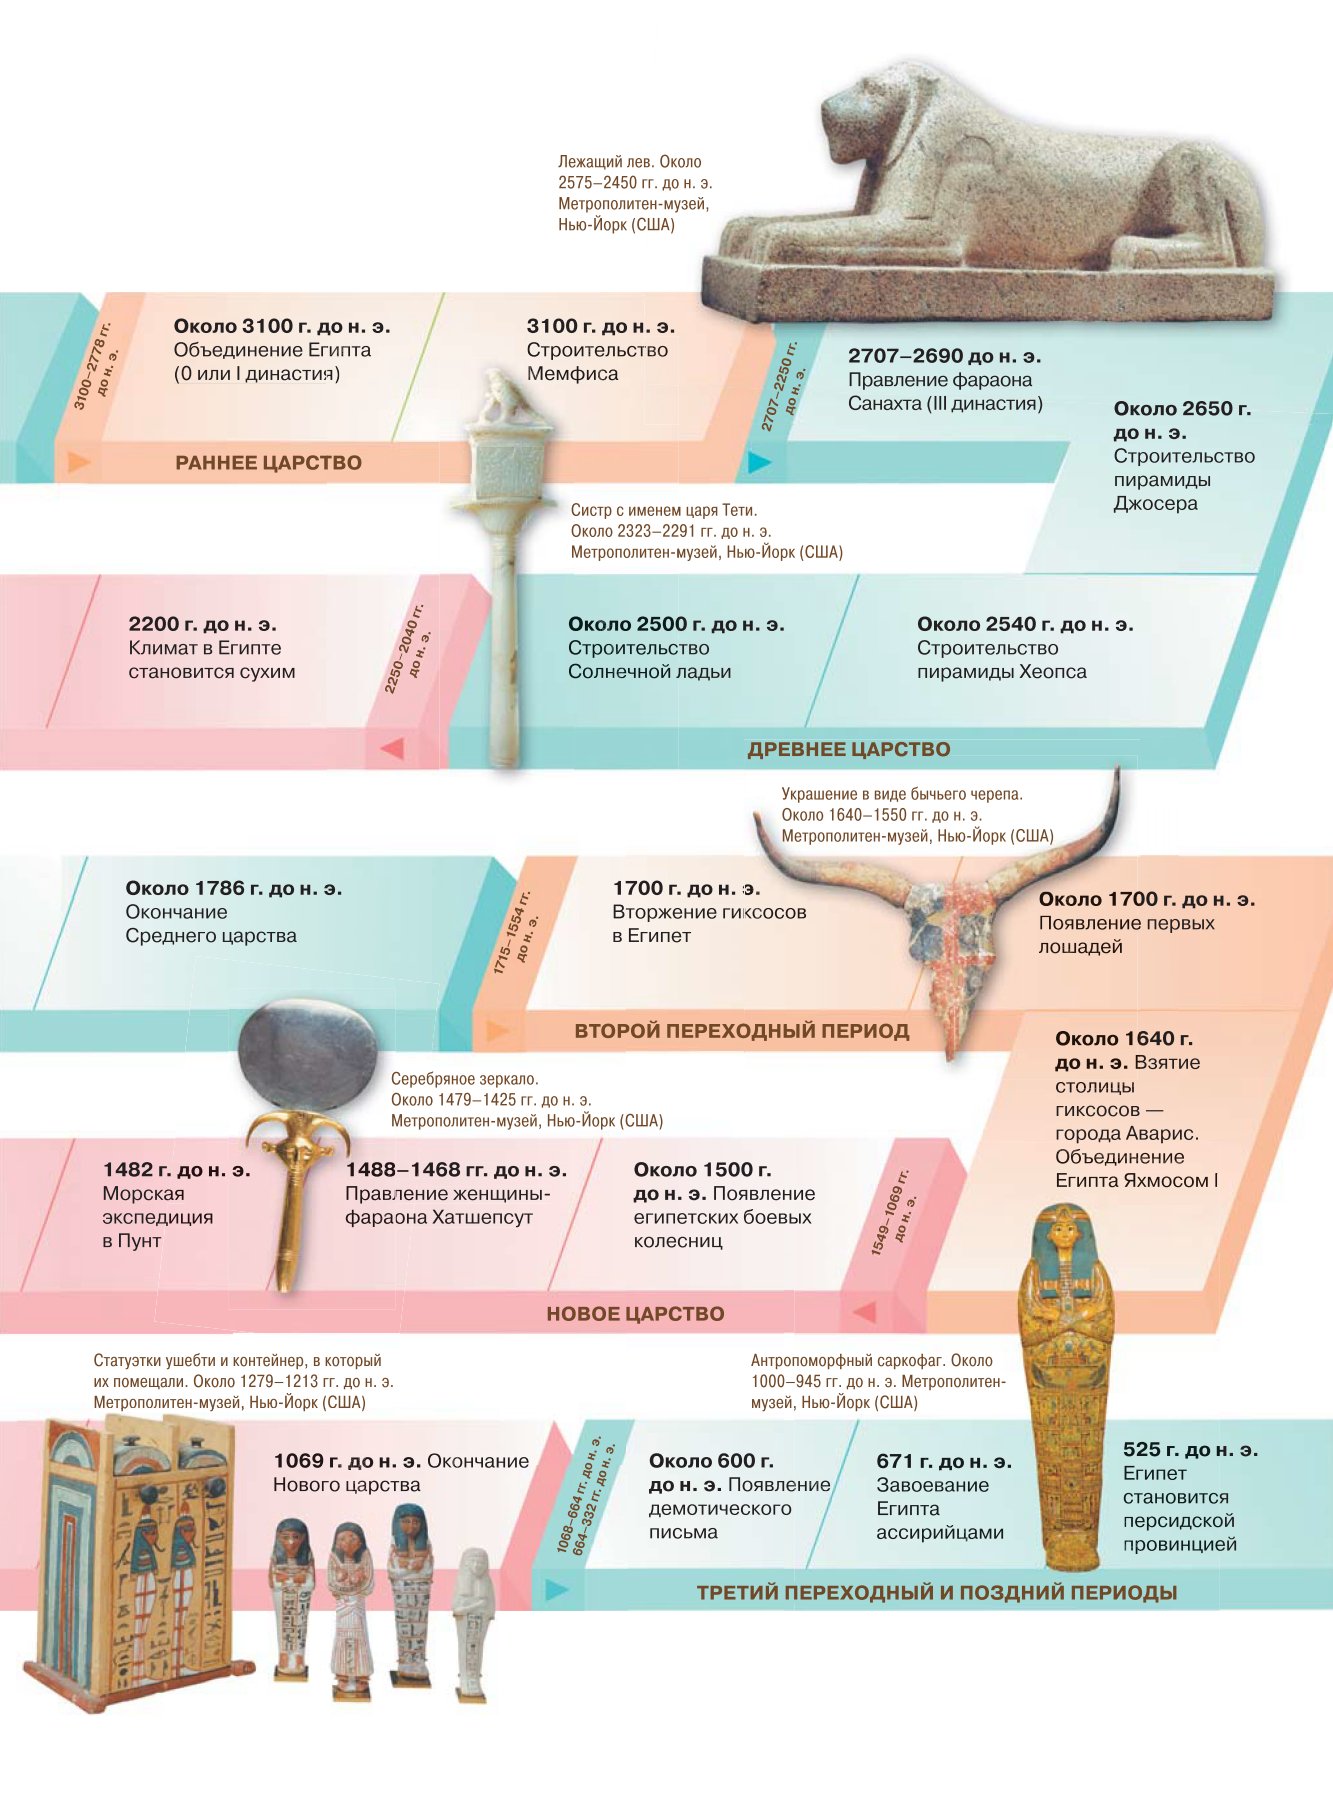 Древний египет царство фараона. Фараоны древнего Египта хронология. Хронология среднего царства в древнем Египте. Список династий древнего Египта. Таблица фараонов древнего Египта.